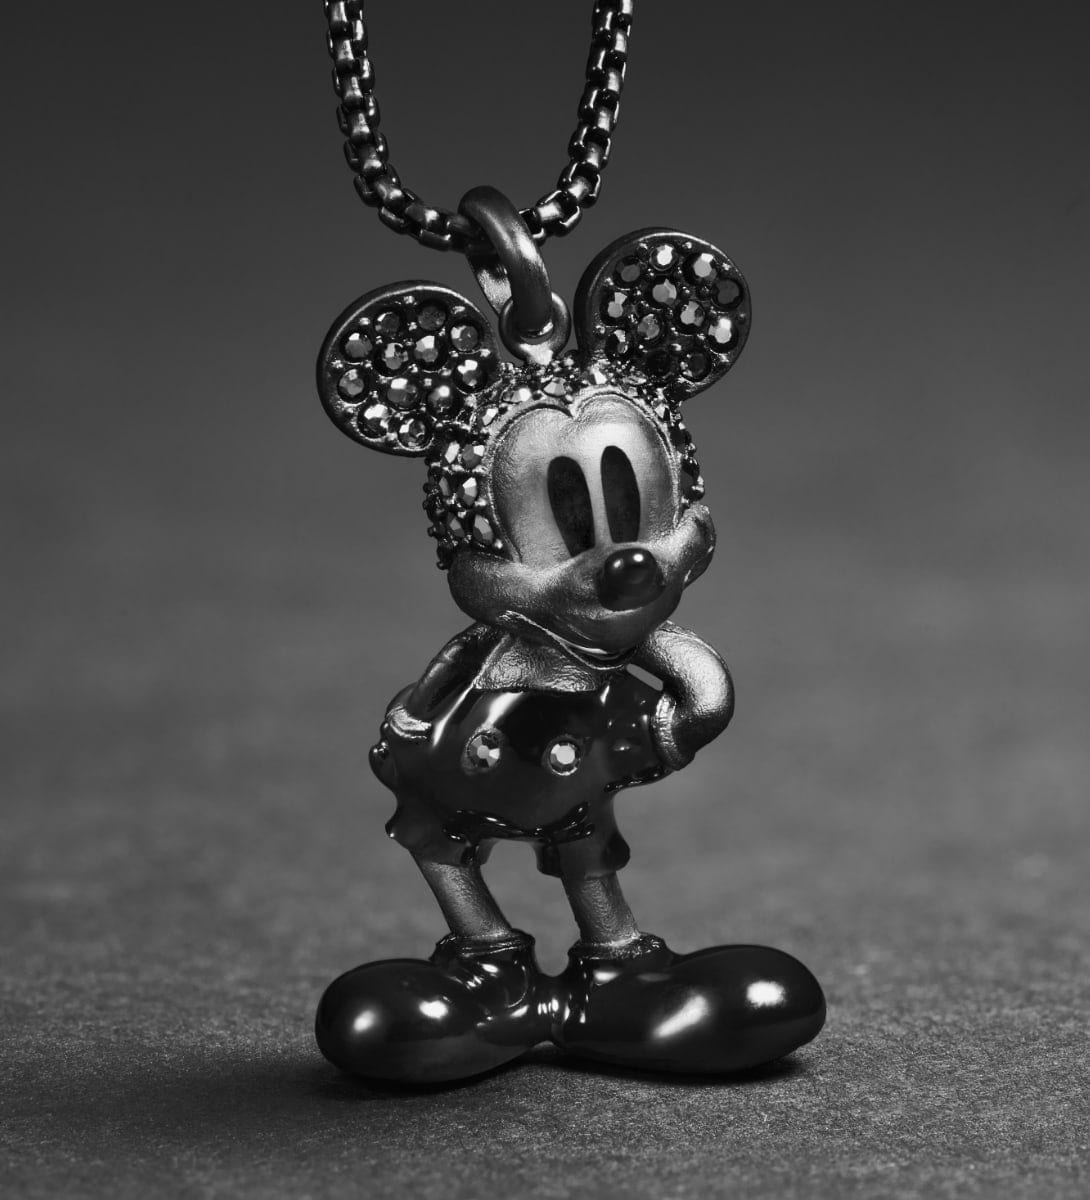 GIF animé de deux images. La première image montre un collier pendentif Mickey Mouse noir, clouté de cristaux d’hématite noire. La deuxième image montre un pendentif doré du profil de Minnie Mouse, décoré de cristaux.